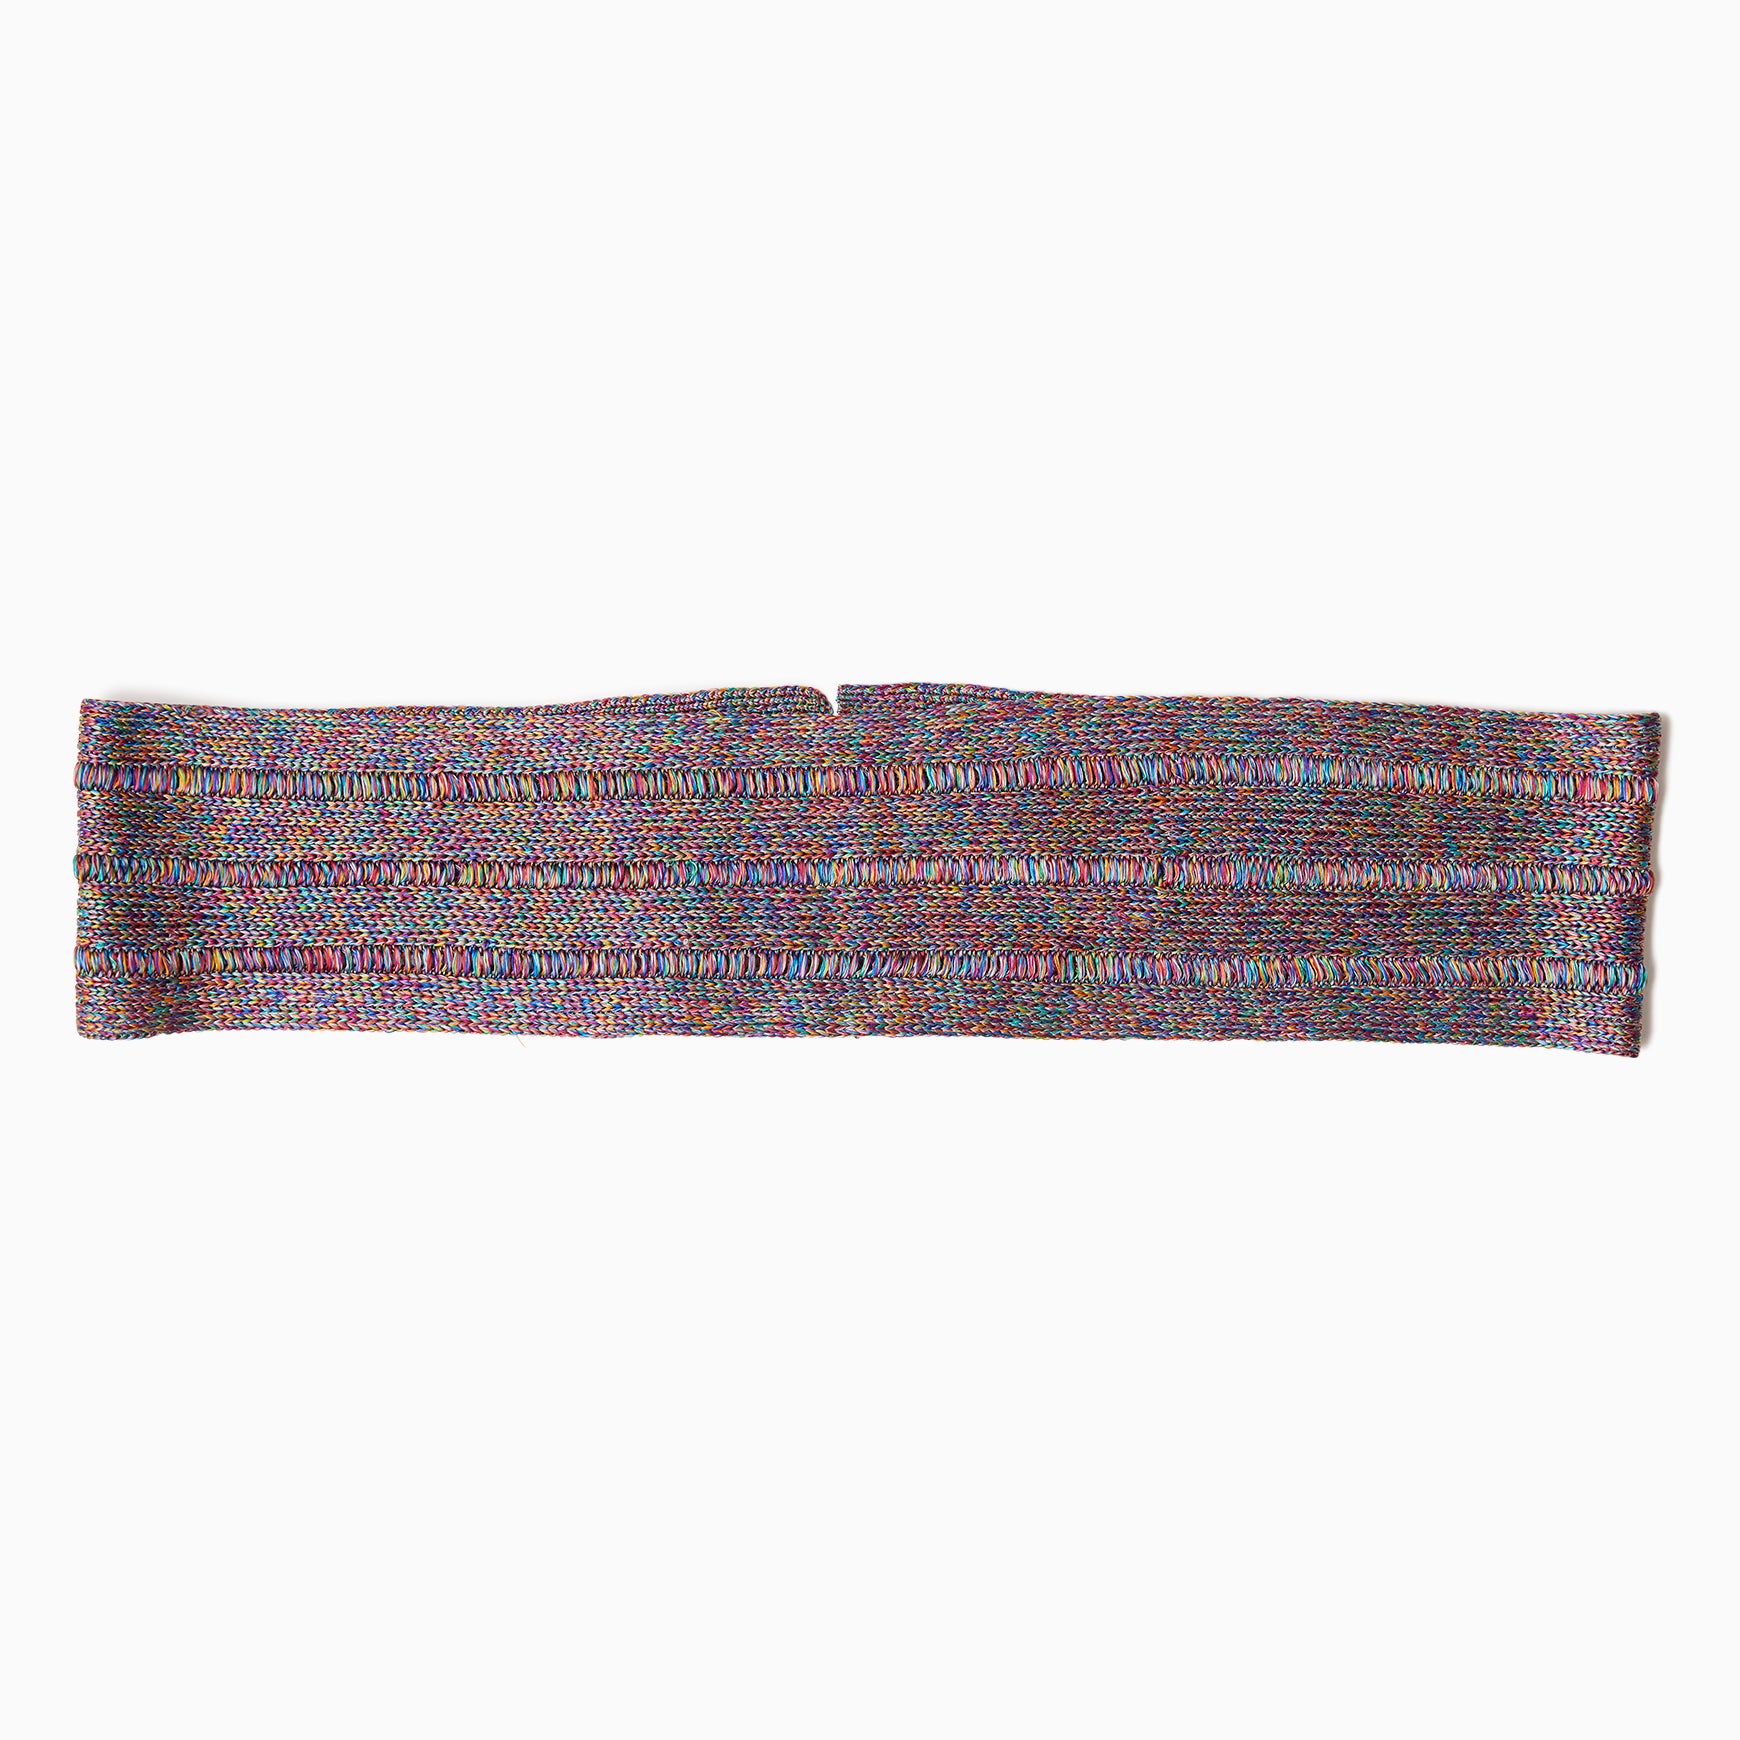 TYPE-1 ATLAS Knit Silk Waist Part Medium (Multi)